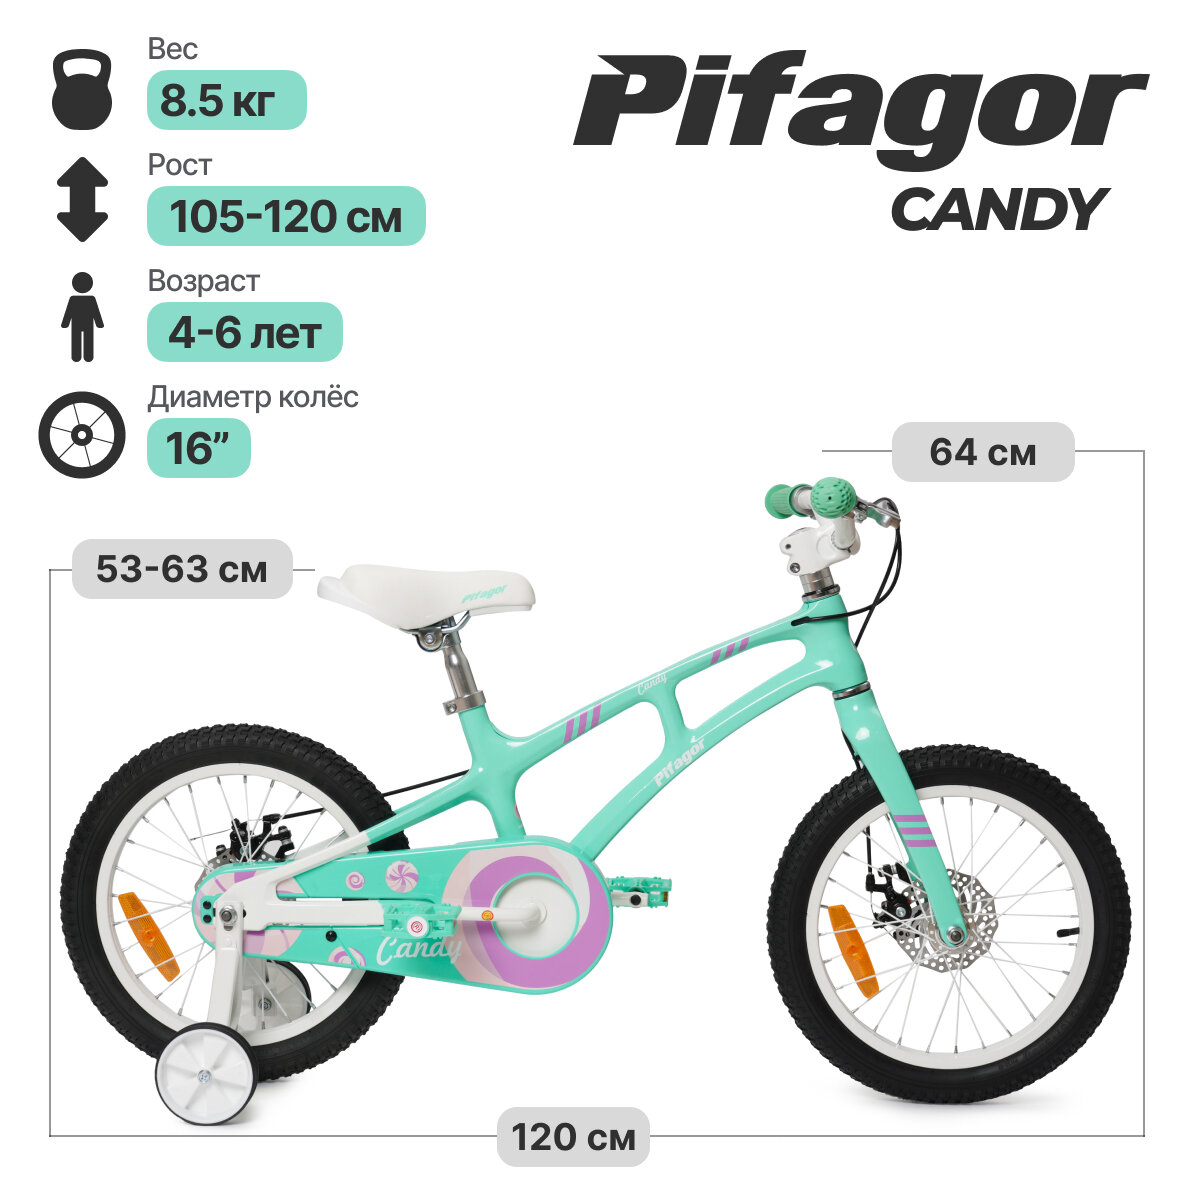 Велосипед Pifagor Candy 16 (Мятный; PG16CYMW)